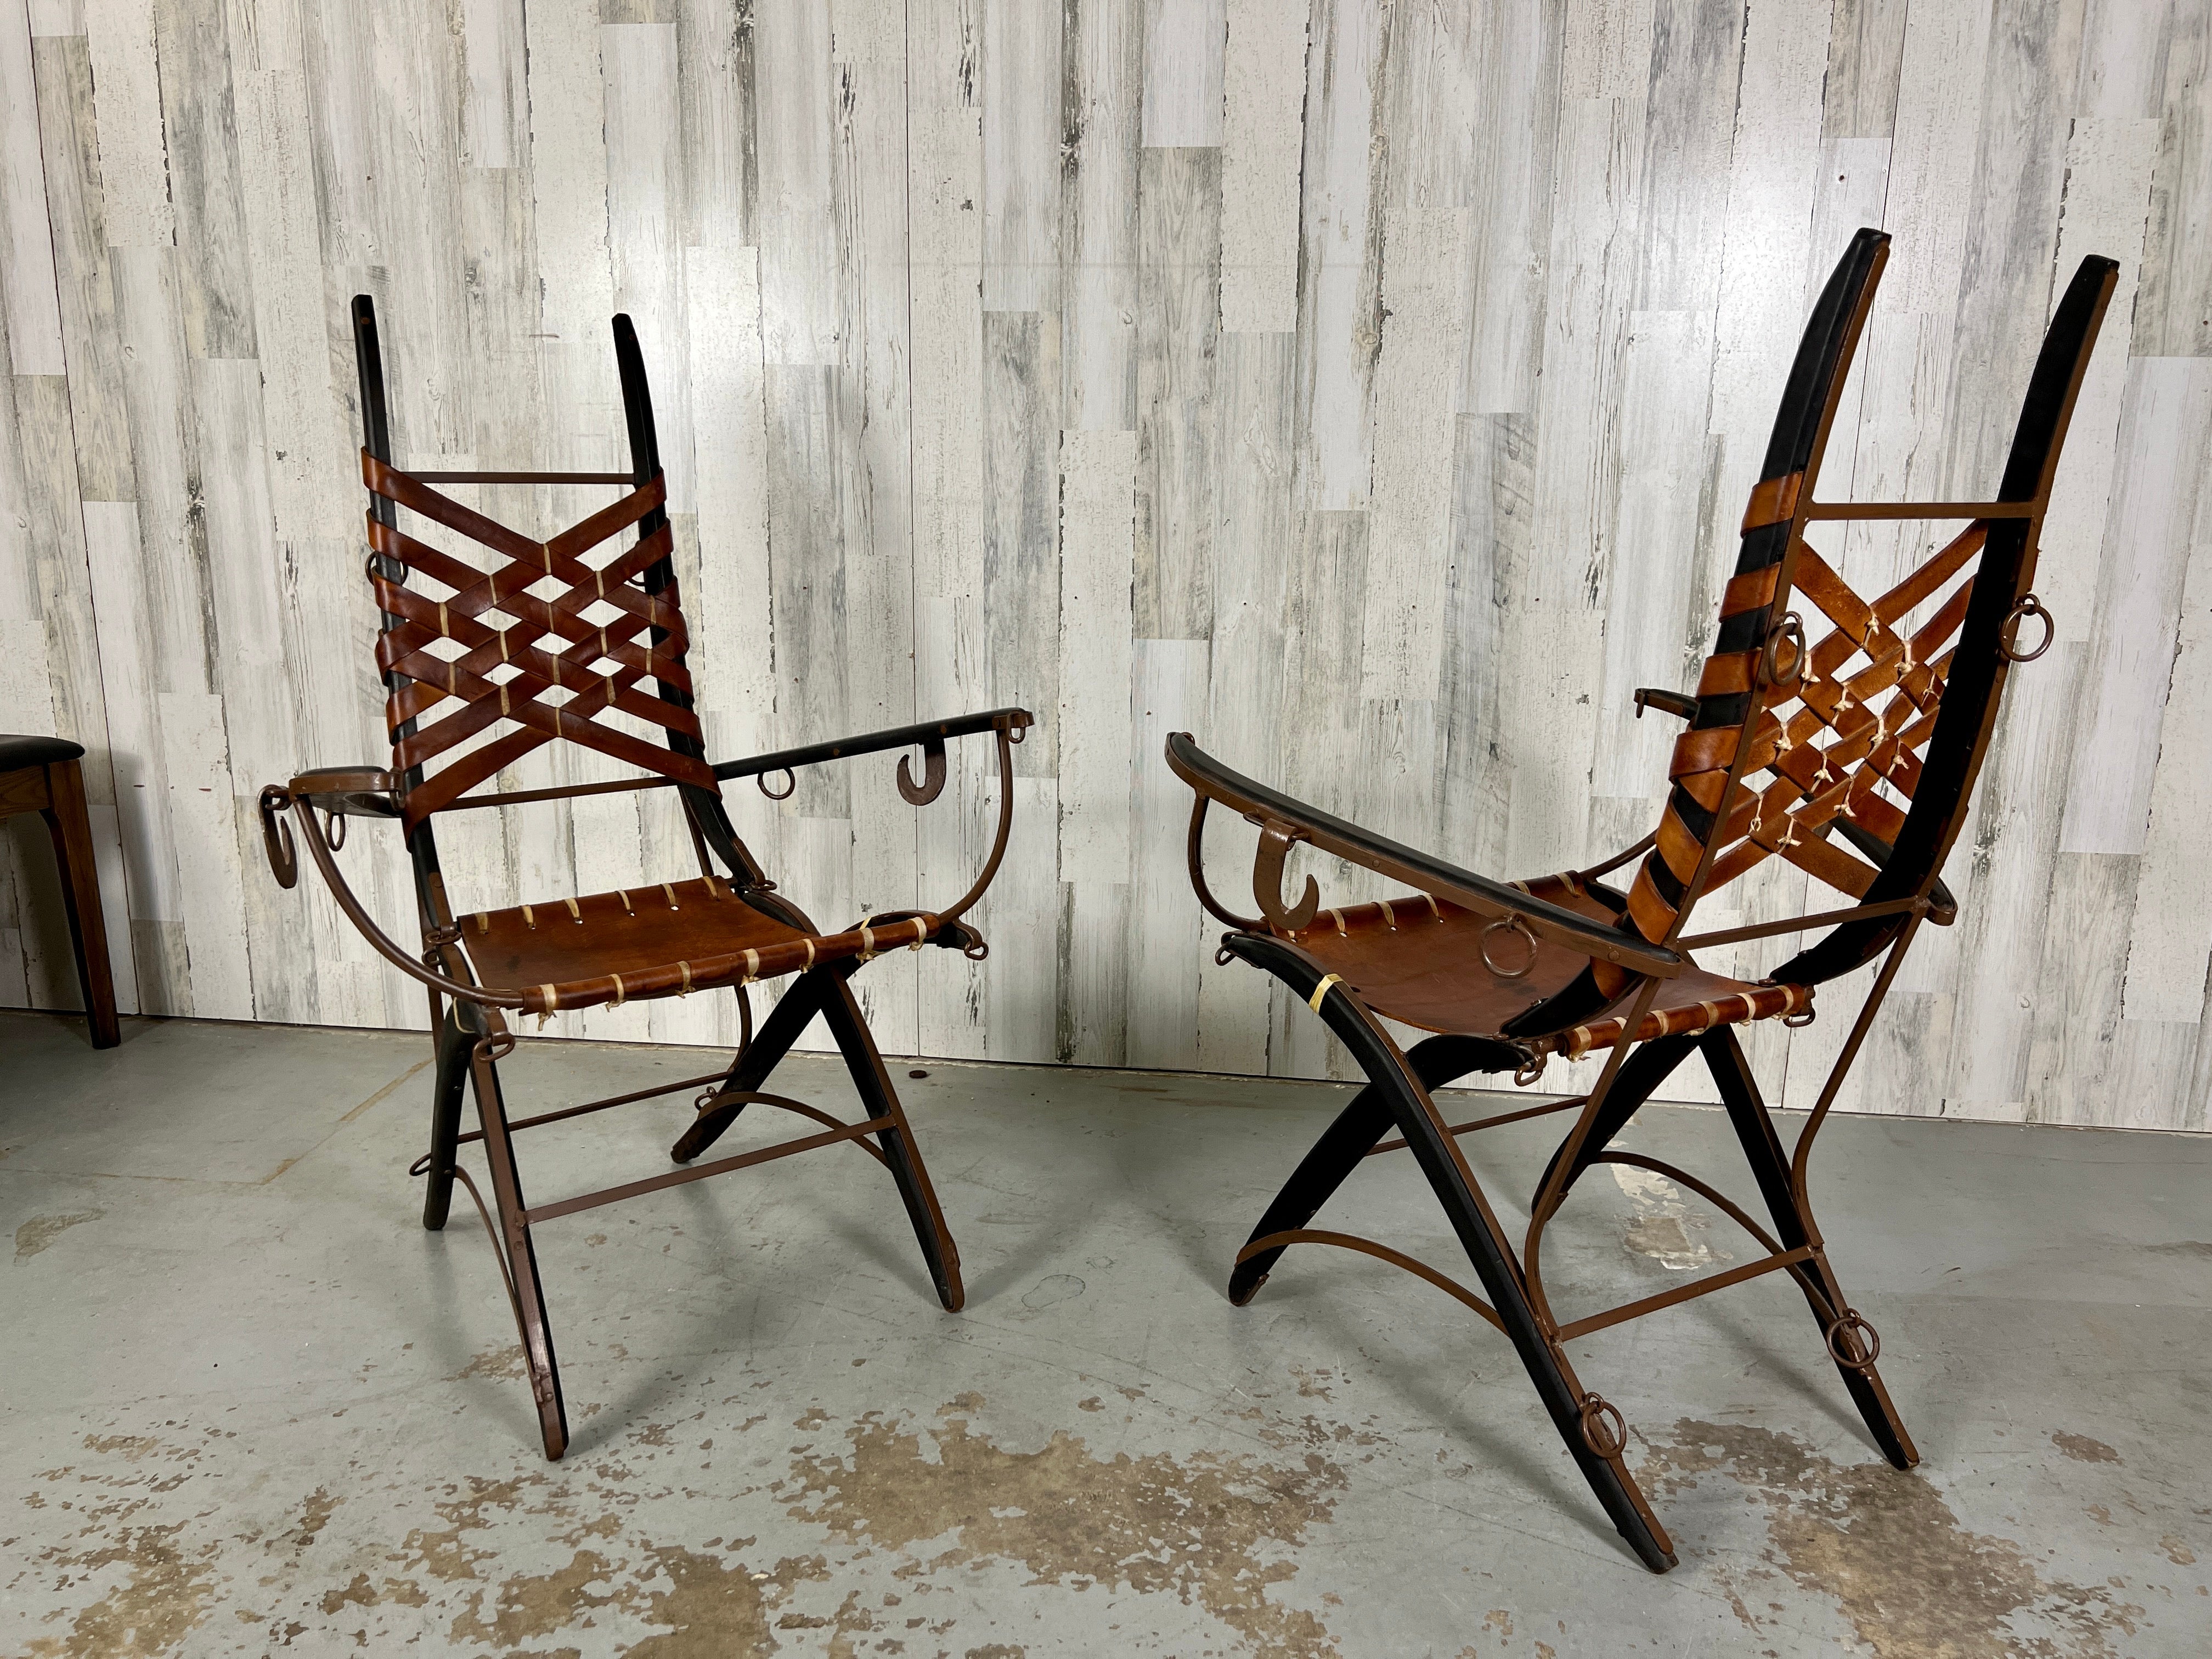 Une paire de chaises d'appoint du designer italien Alberto Marconetti, Italie, années 1960. Design .fabriqué en fer, chêne, cuir. Chêne et fer sculptés avec des crochets et des anneaux en fer comme accents. 
Le dossier en cuir au design de tressage